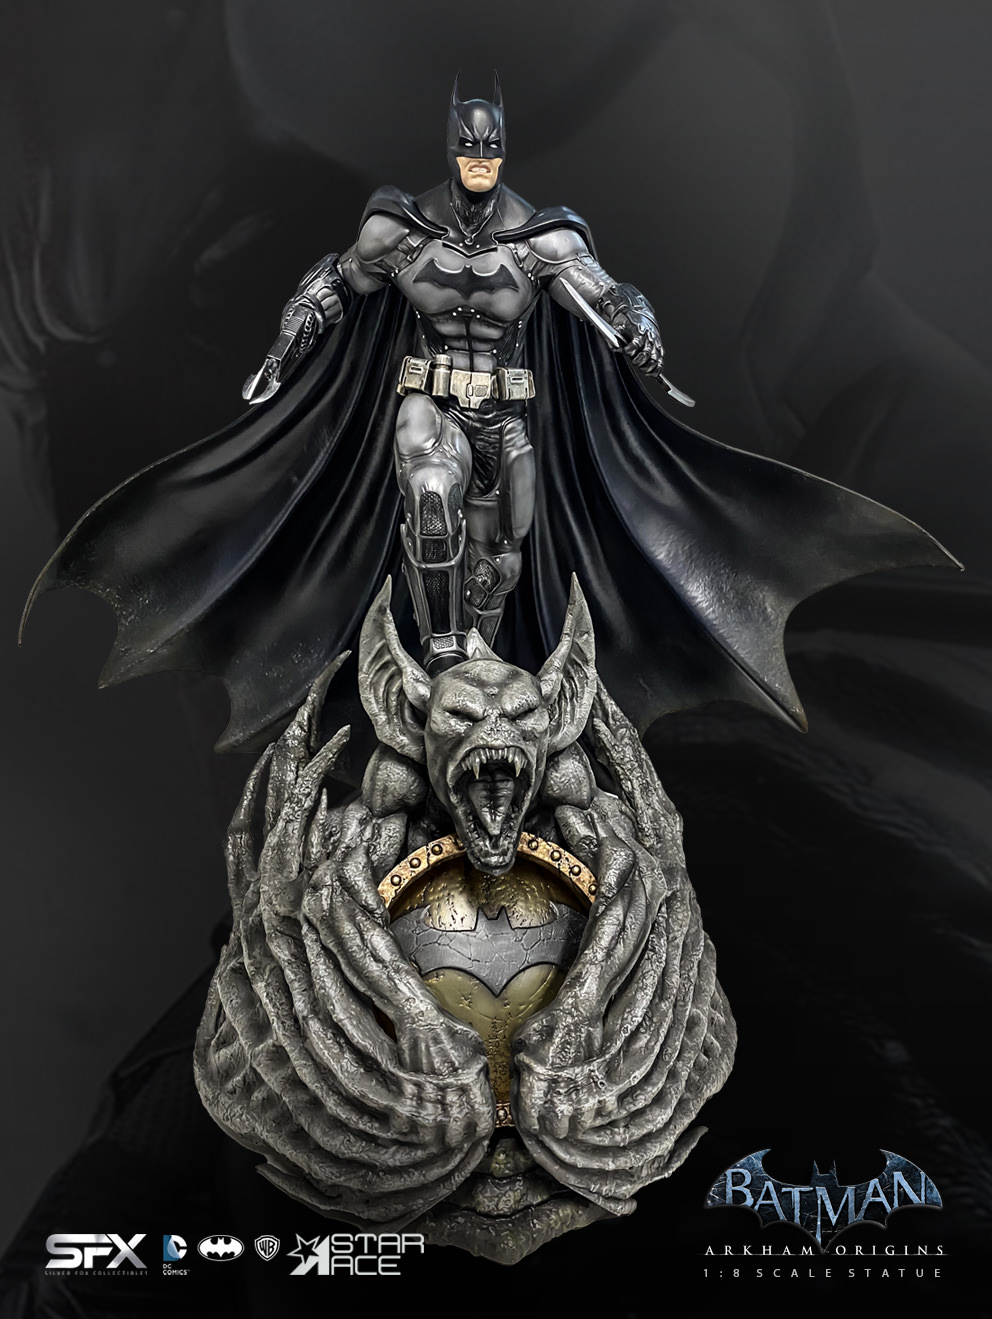 Batman Arkham Origins Exclusive Edition (Prototype Shown) View 44